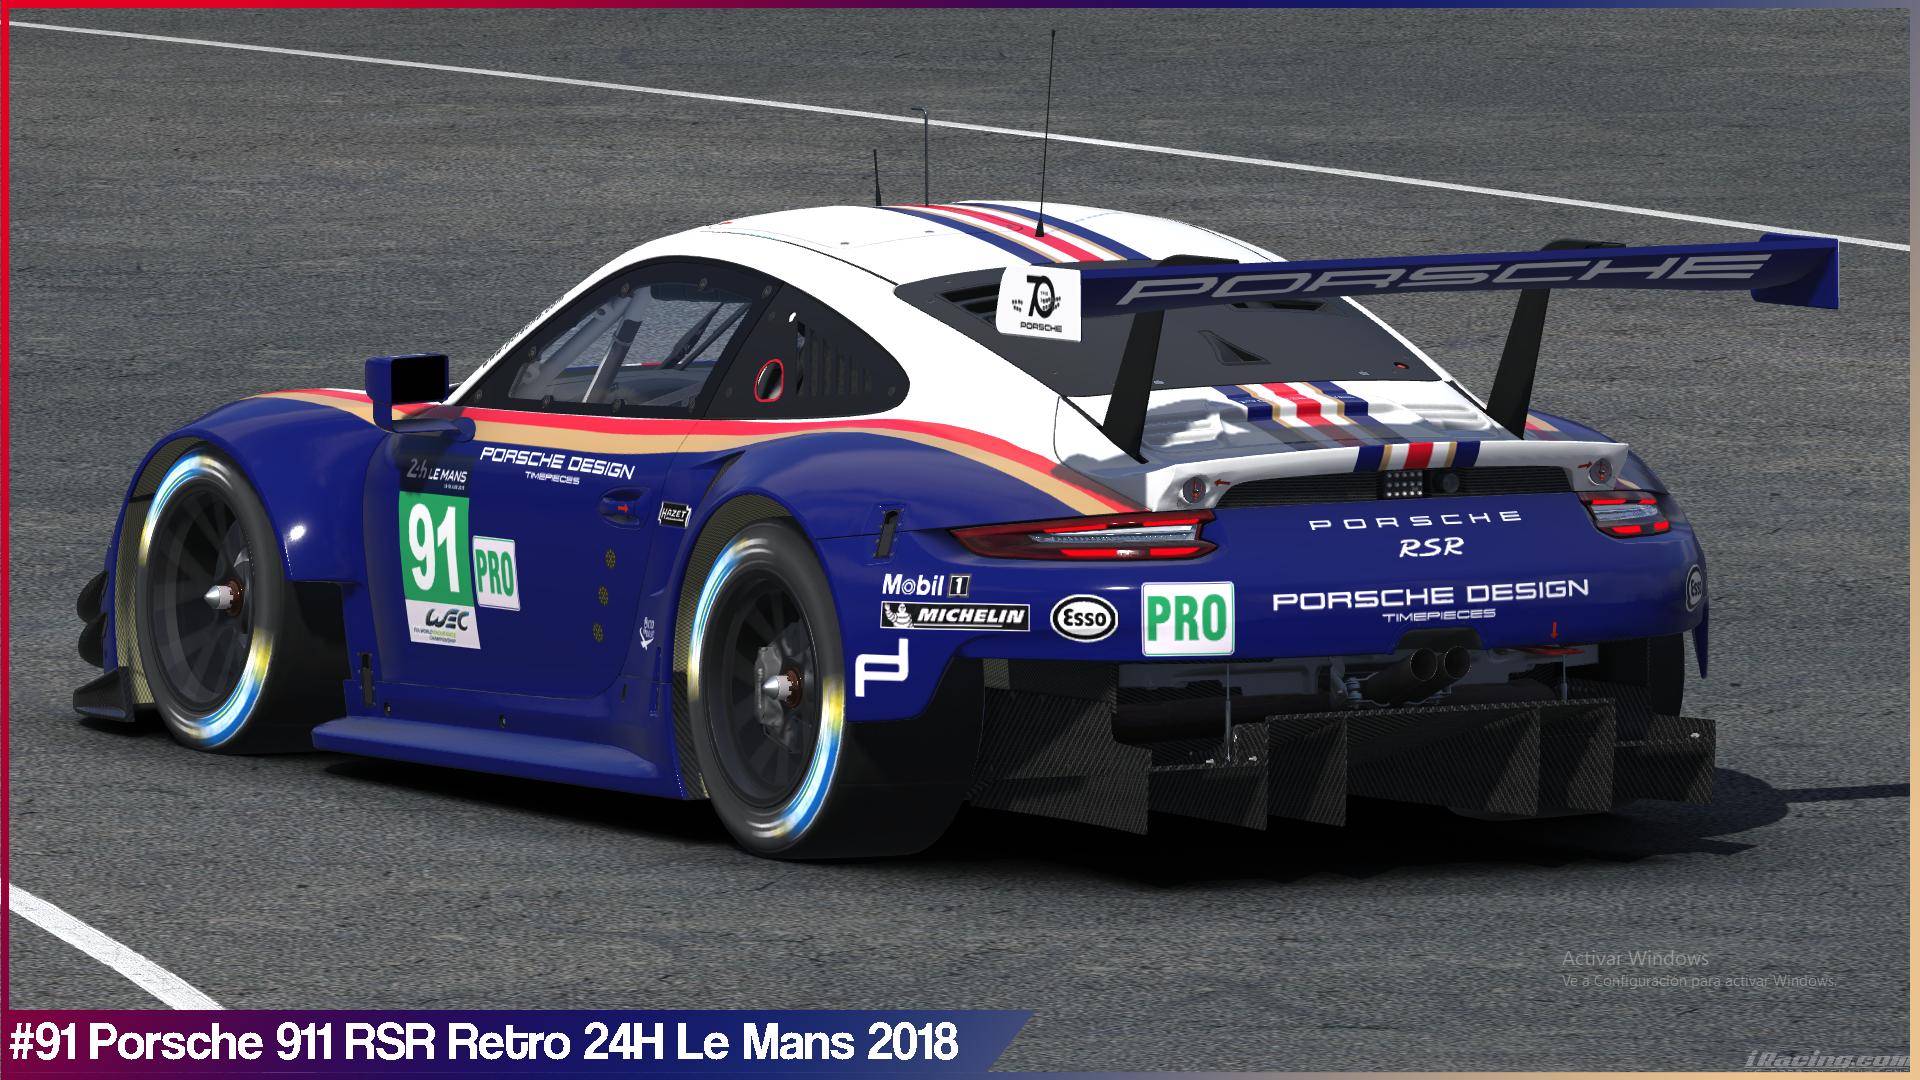 Preview of #91 Porsche Retro 24H Le Mans 2018 by Sergio Hernando